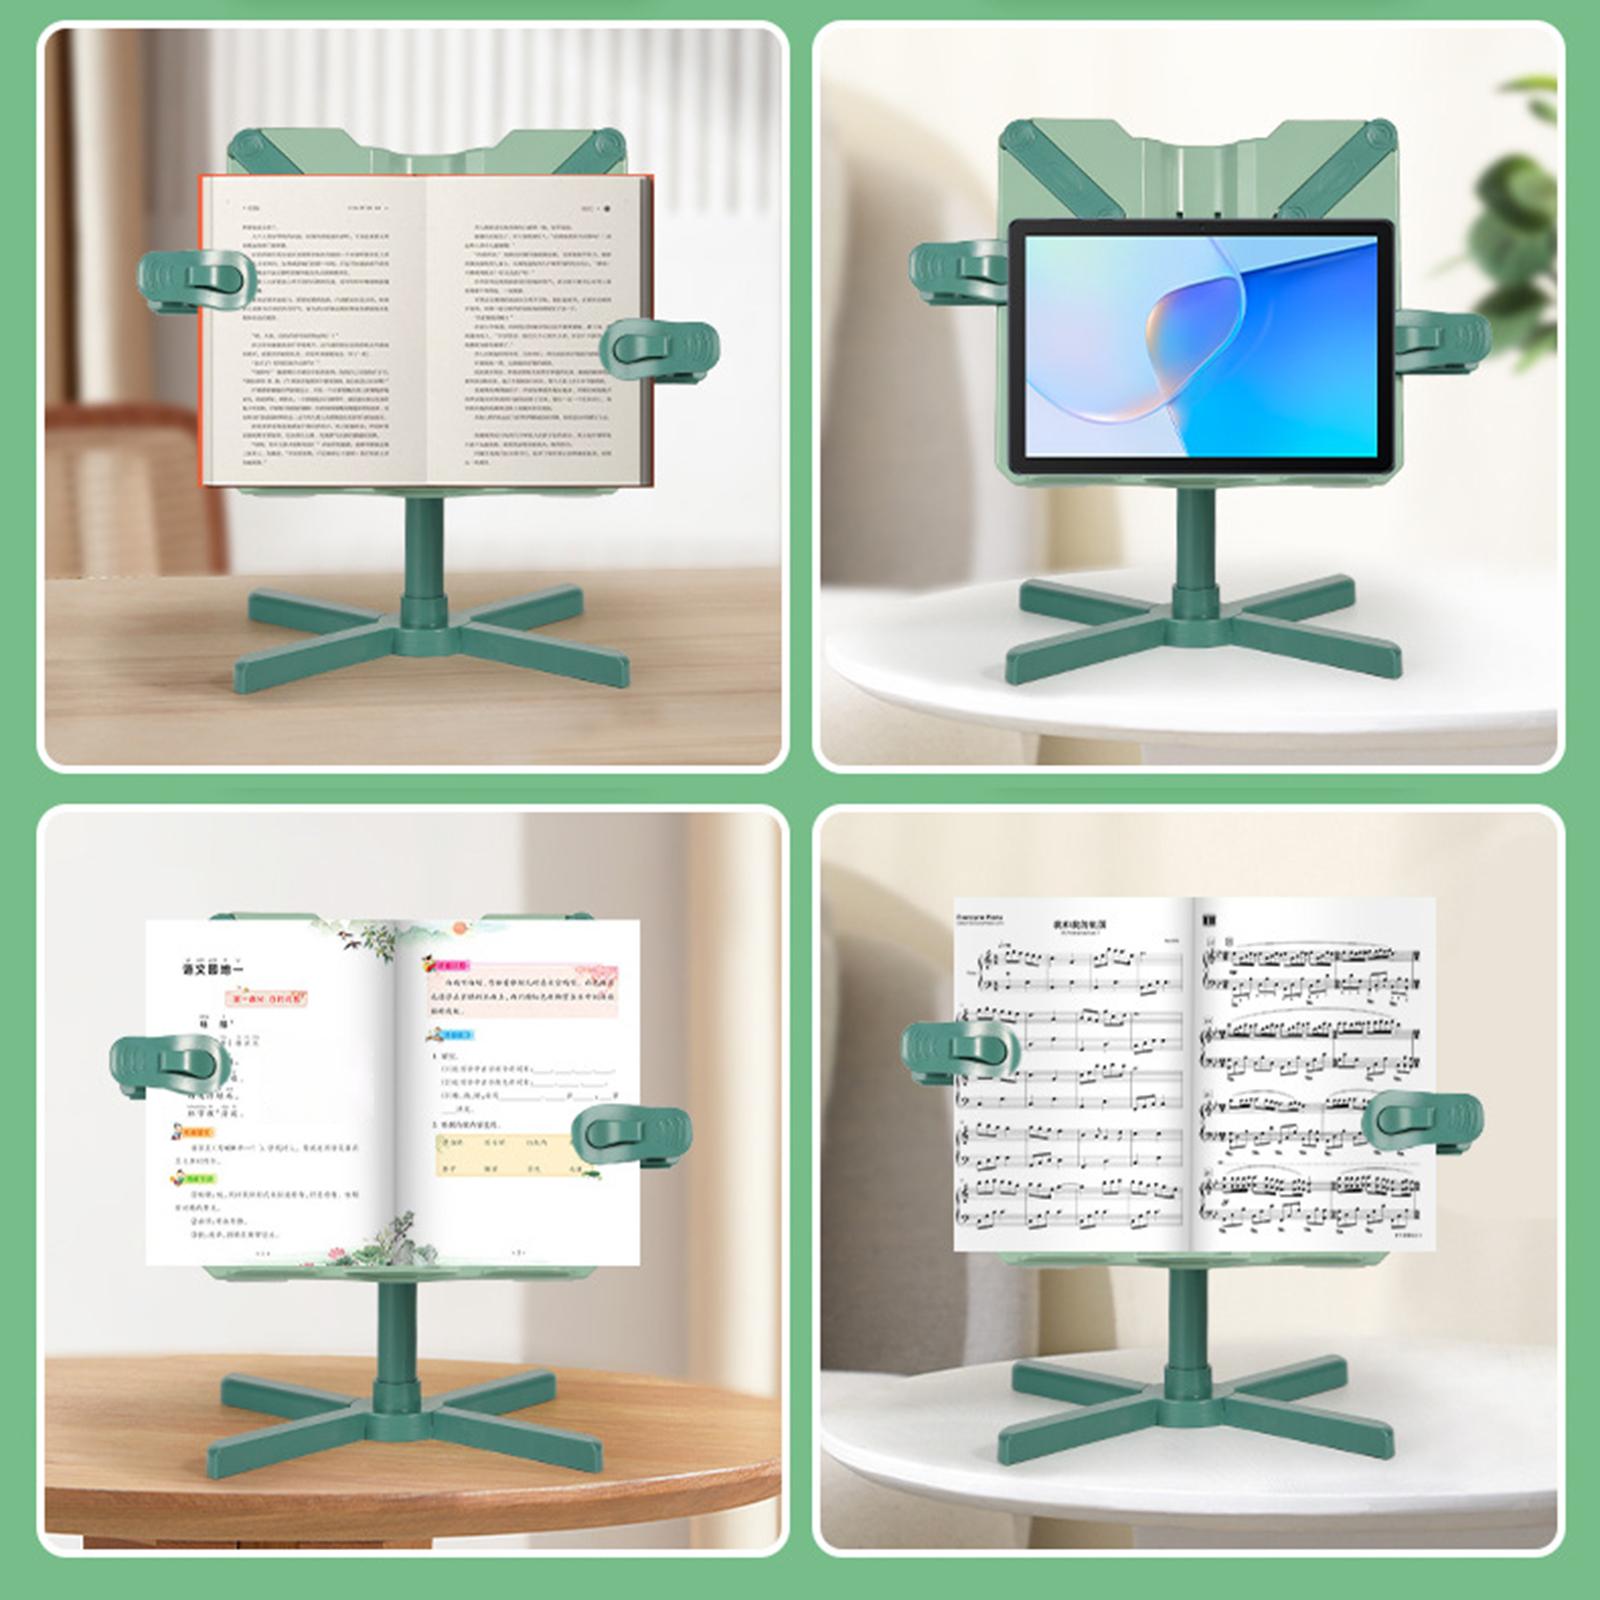 Book Holder Stand Portable Durable Tablet Holder for Kitchen Desktop Bedroom Green